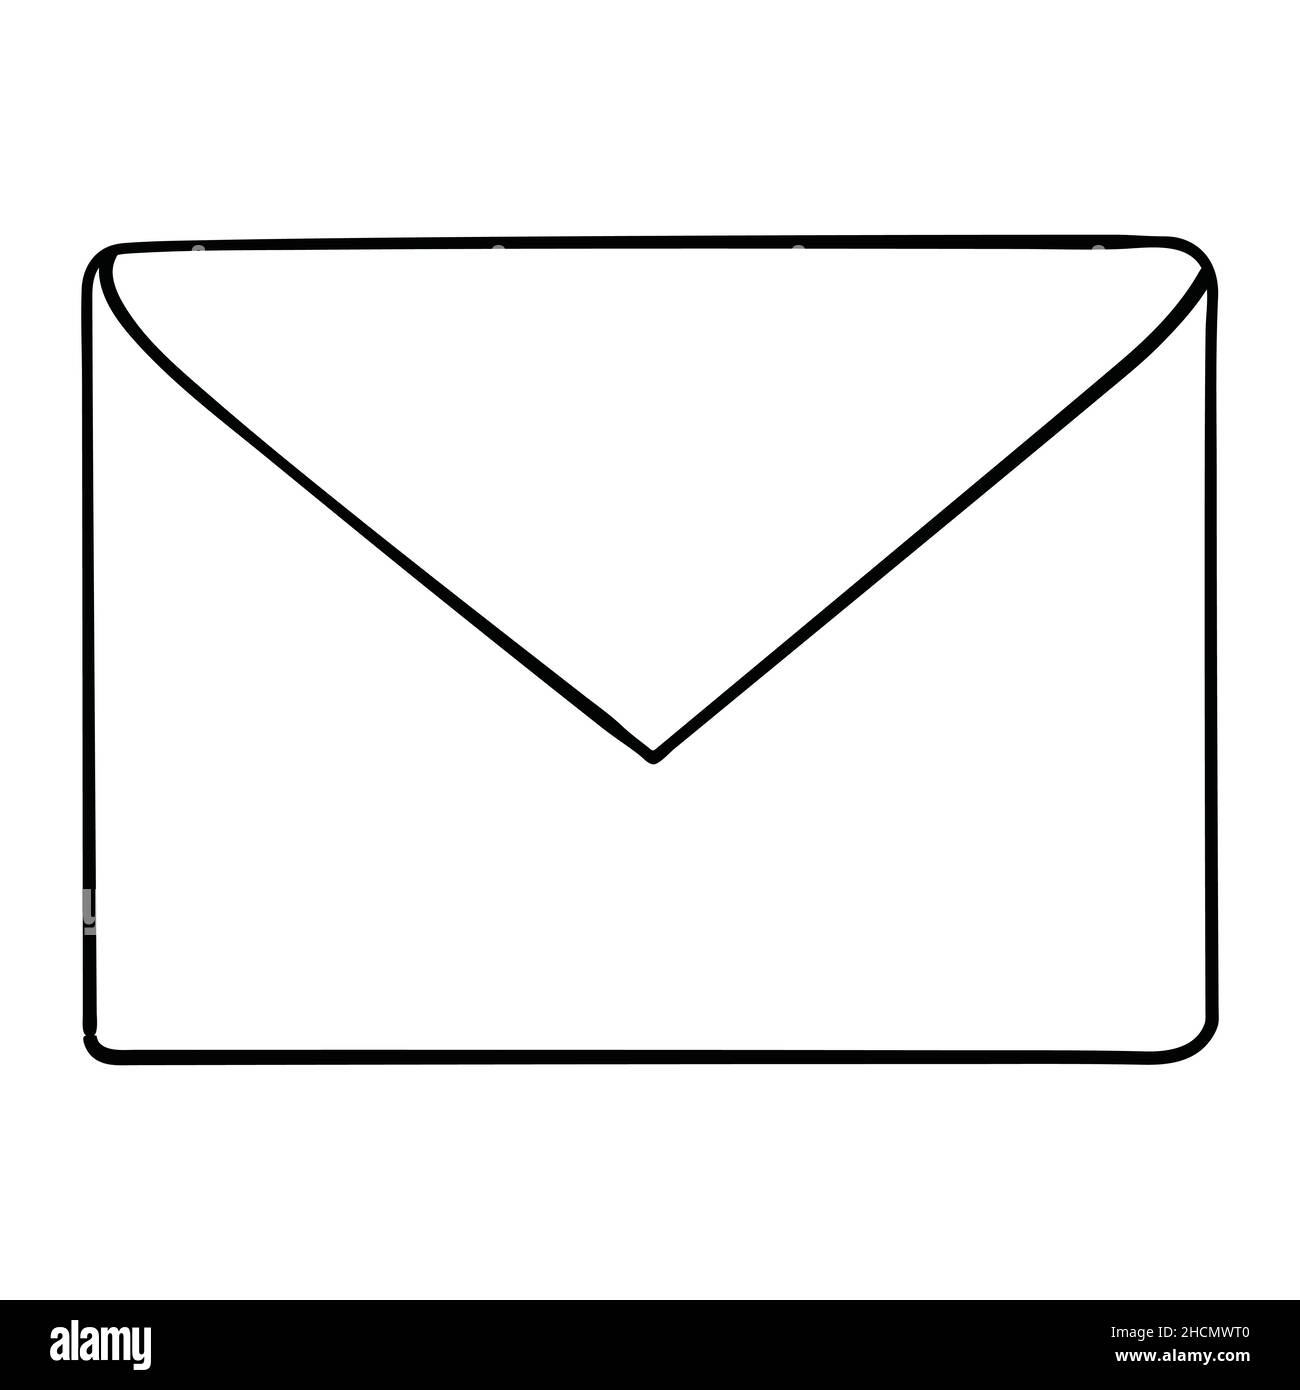 illustration et vecteur de dessin animé d'enveloppe, noir et blanc, dessiné  à la main, style d'esquisse, isolé sur un arrière-plan blanc Image  Vectorielle Stock - Alamy